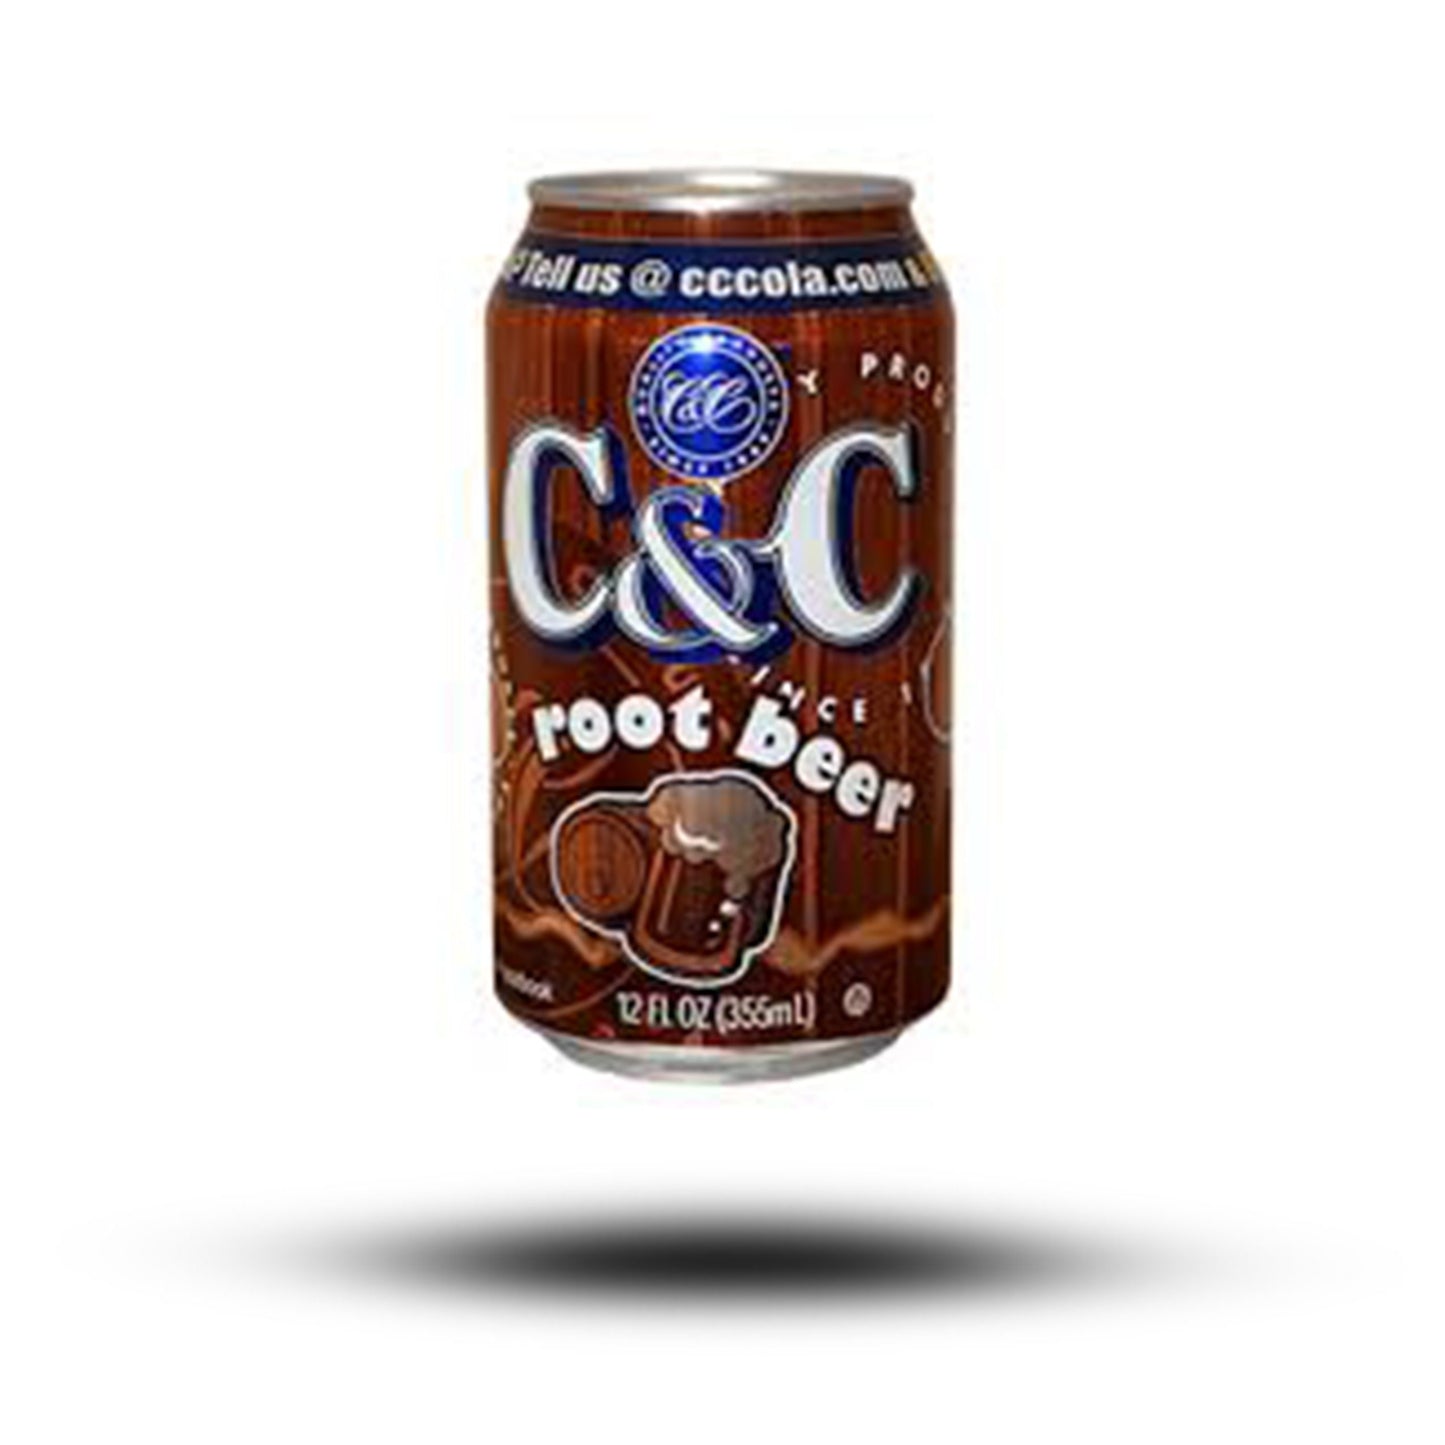 amerikanische Getränke, Getränke aus aller Welt, internationale Getränke, amerikanische Drinks, Drinks aus aller Welt, C&C Soda Root Beer